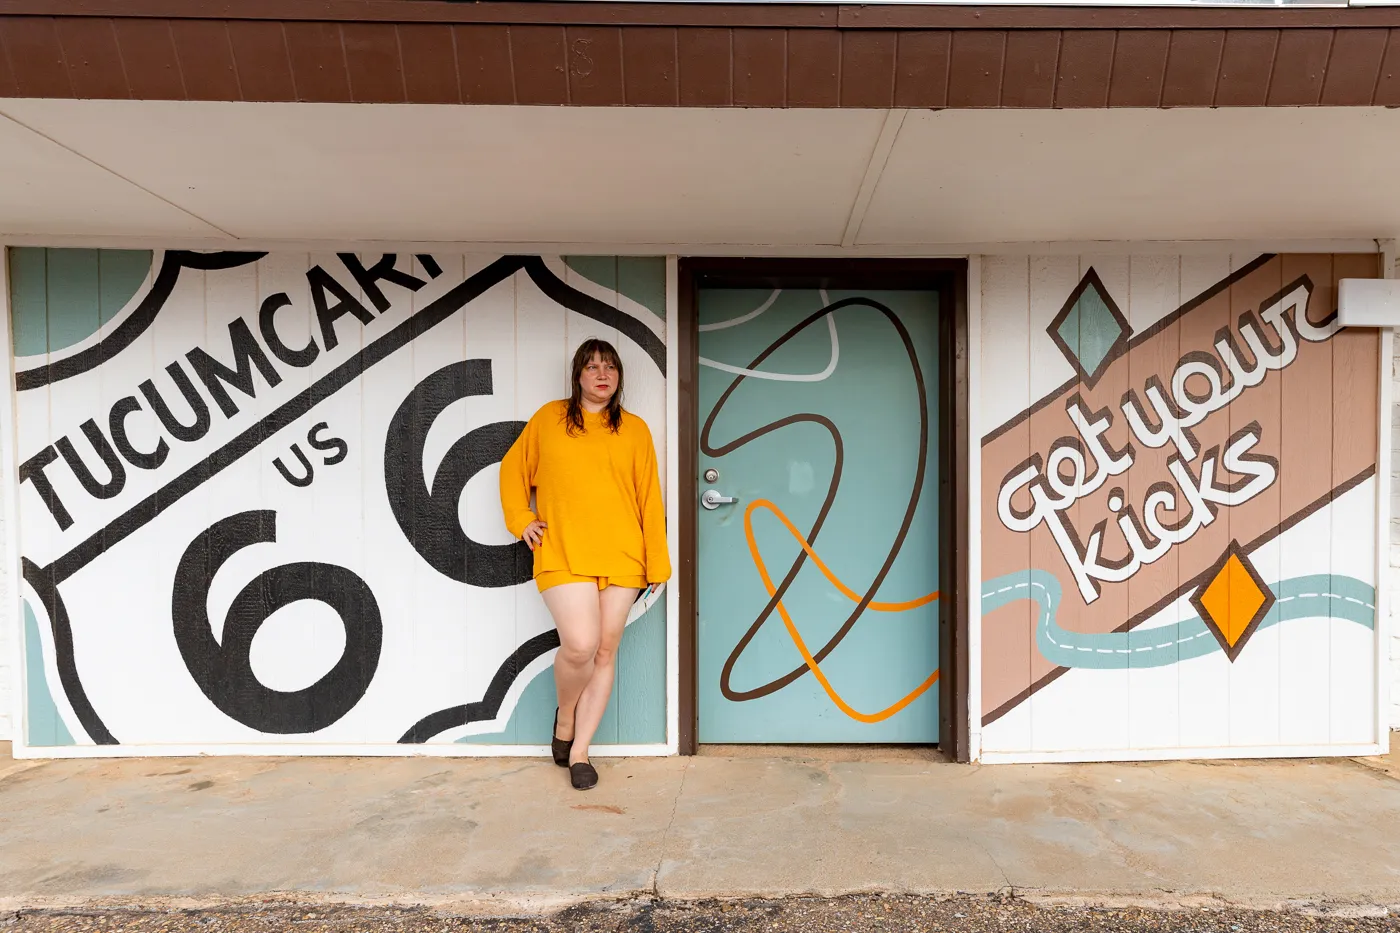 Get Your Kicks Route 66 Mural at Motel Safari in Tucumcari, New Mexico (Route 66 Motel)